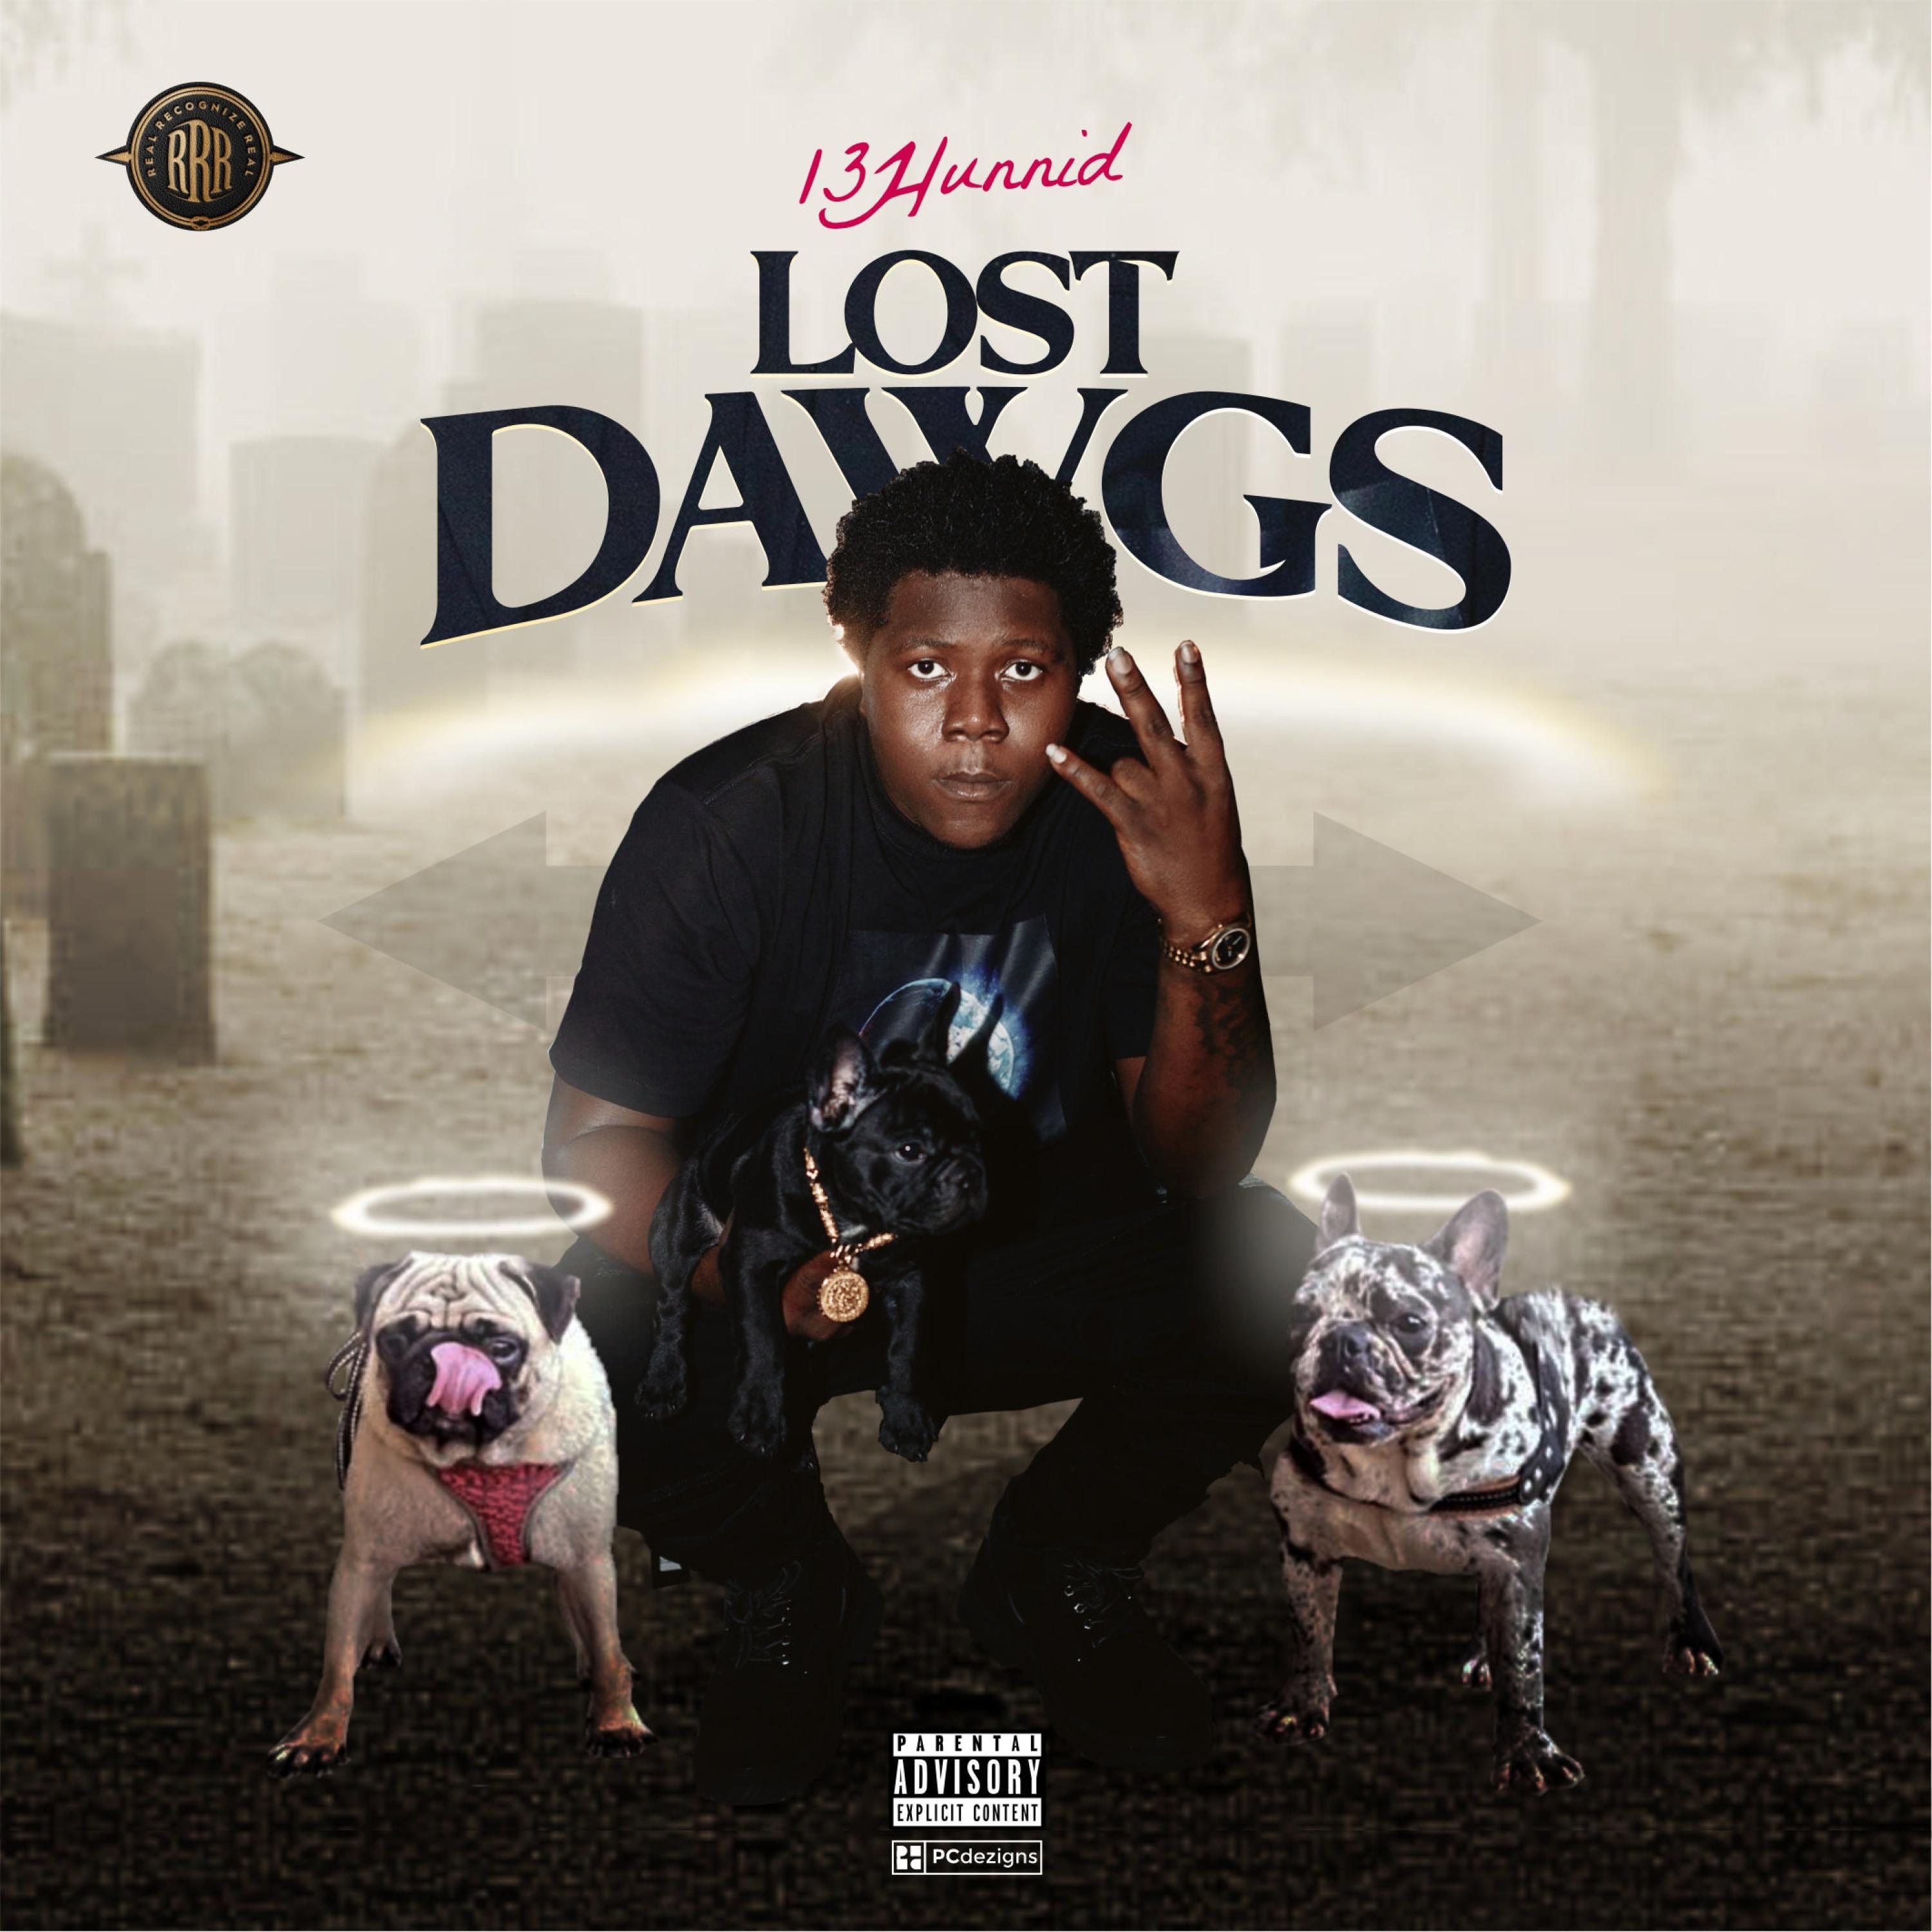 13 hunnid - Lost Dawgs